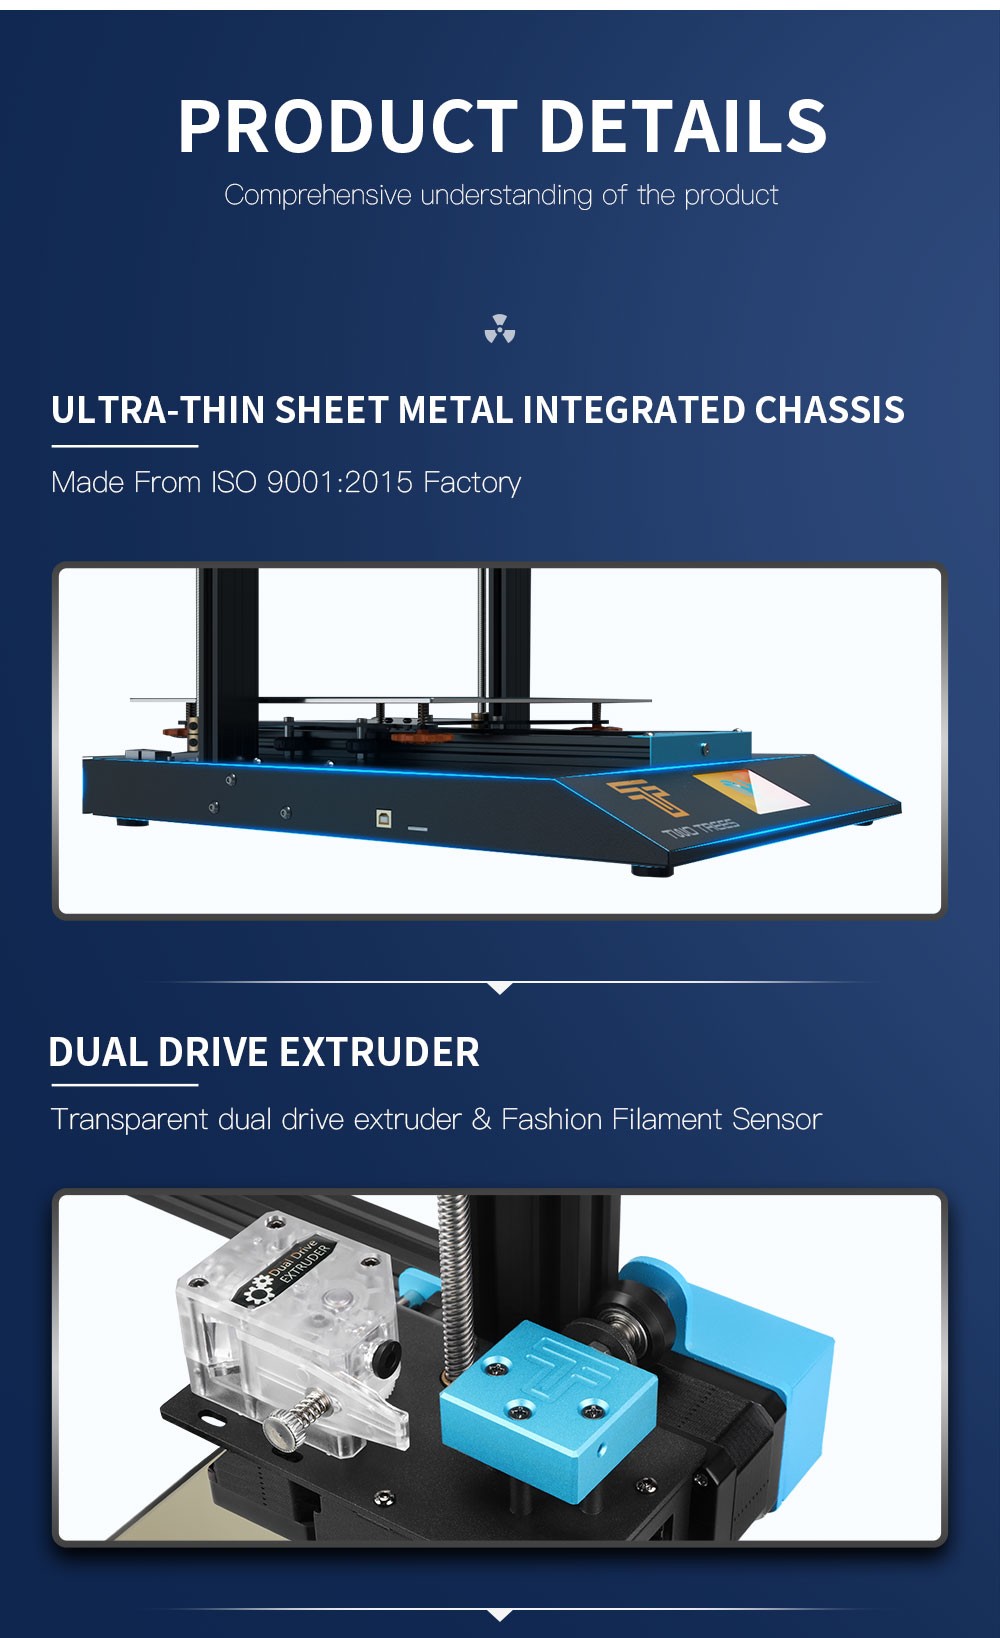 Twotress Bluer Plus 3D เครื่องพิมพ์ปรับระดับอัตโนมัติ TMC2209/MKS Robin Nano/Power Resume/Filament Runout Detection 300x300x400m